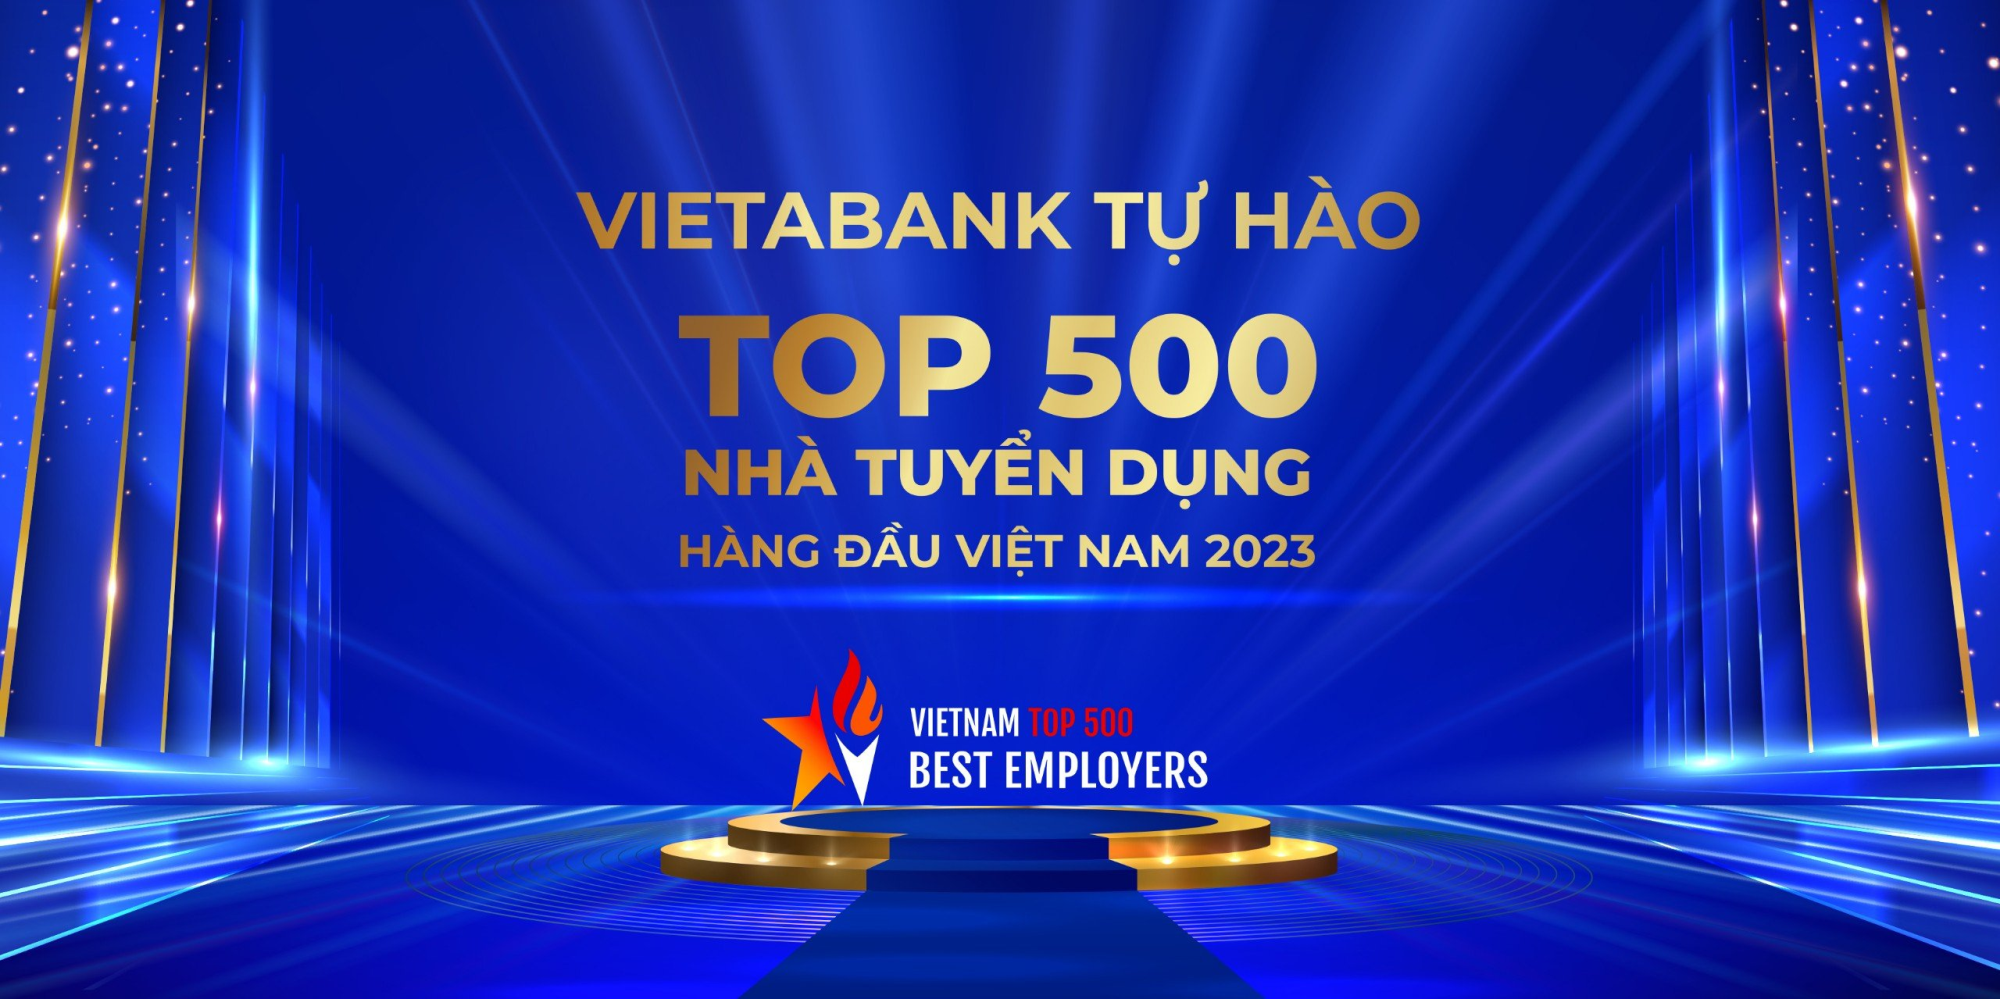 VietNam Top 500 Best Employers 2023 -  Top 500 Nhà tuyển dụng hàng đầu Việt Nam 2023